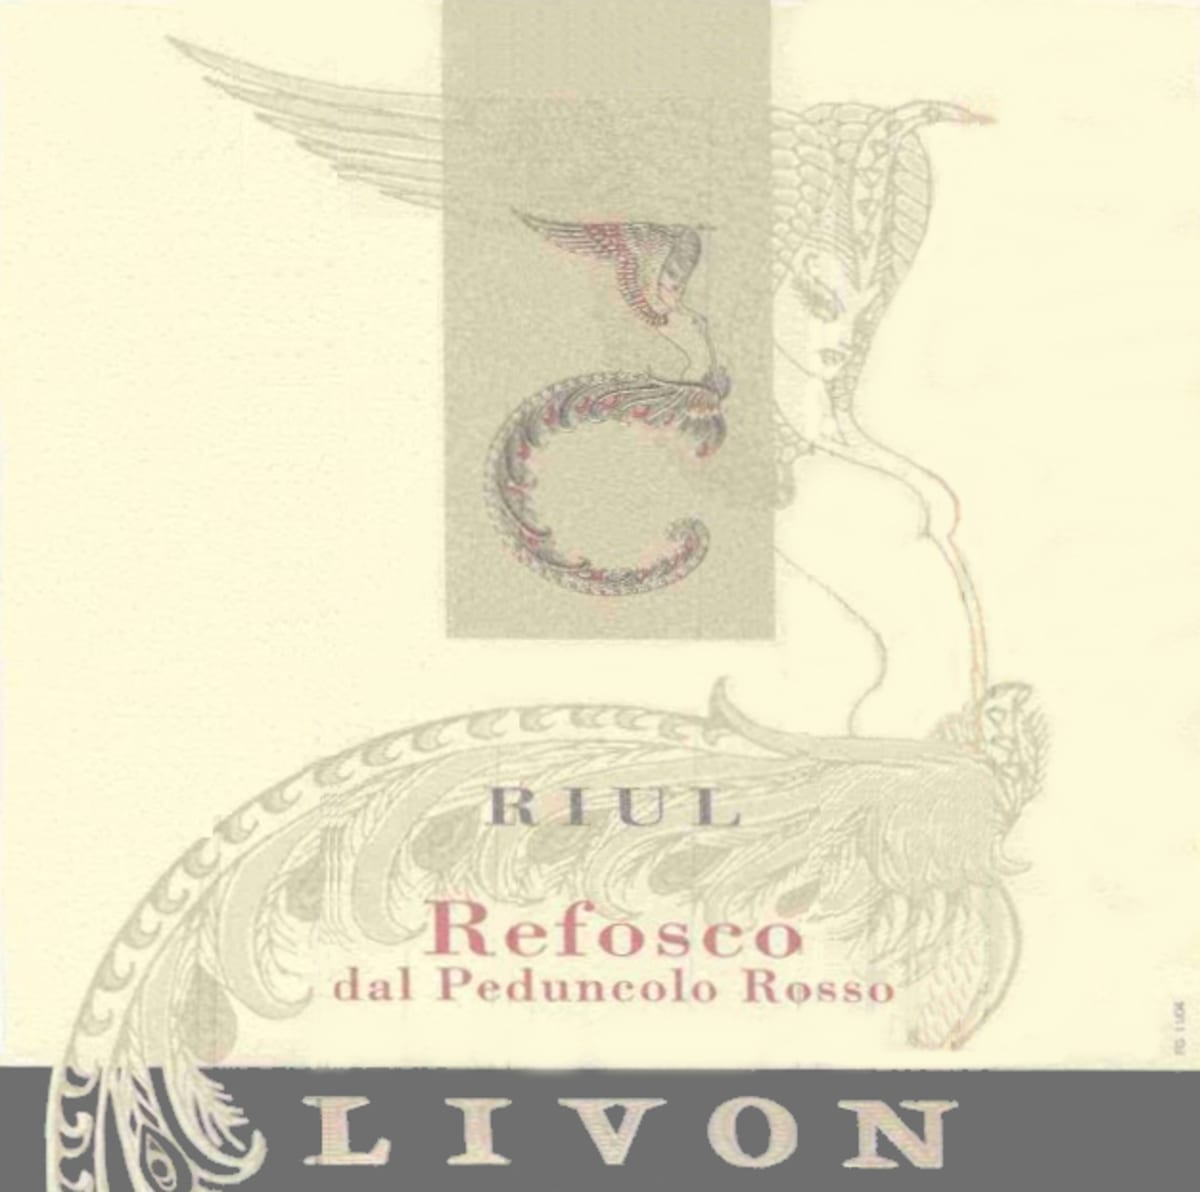 Livon Colli Orientali del Friuli Riul Refosco dal Peduncolo Rosso 2011 Front Label